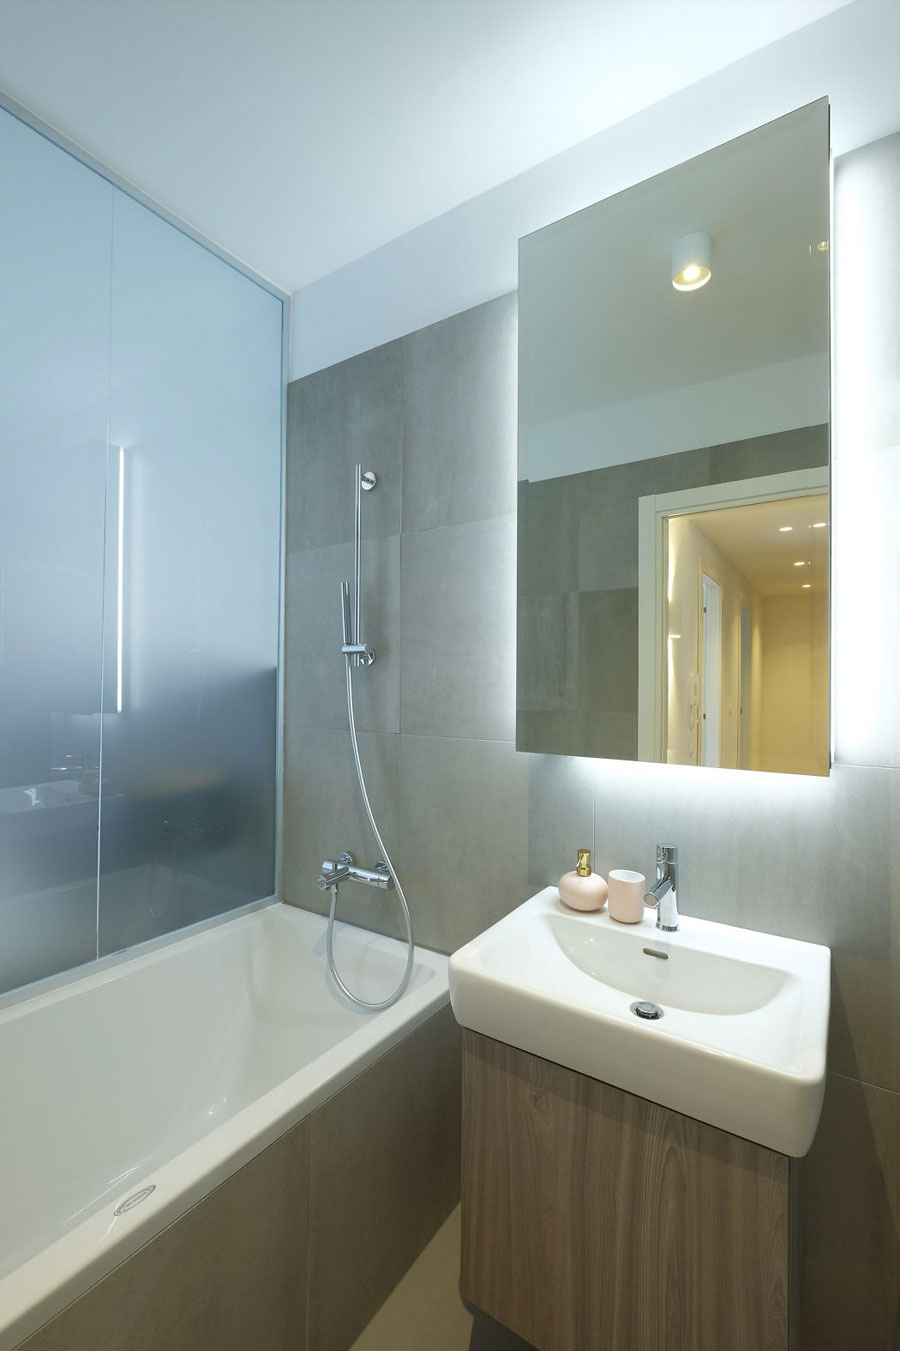 Matglazen wand tussen badkamer en slaapkamer zorgt voor licht en ruimtelijkheid